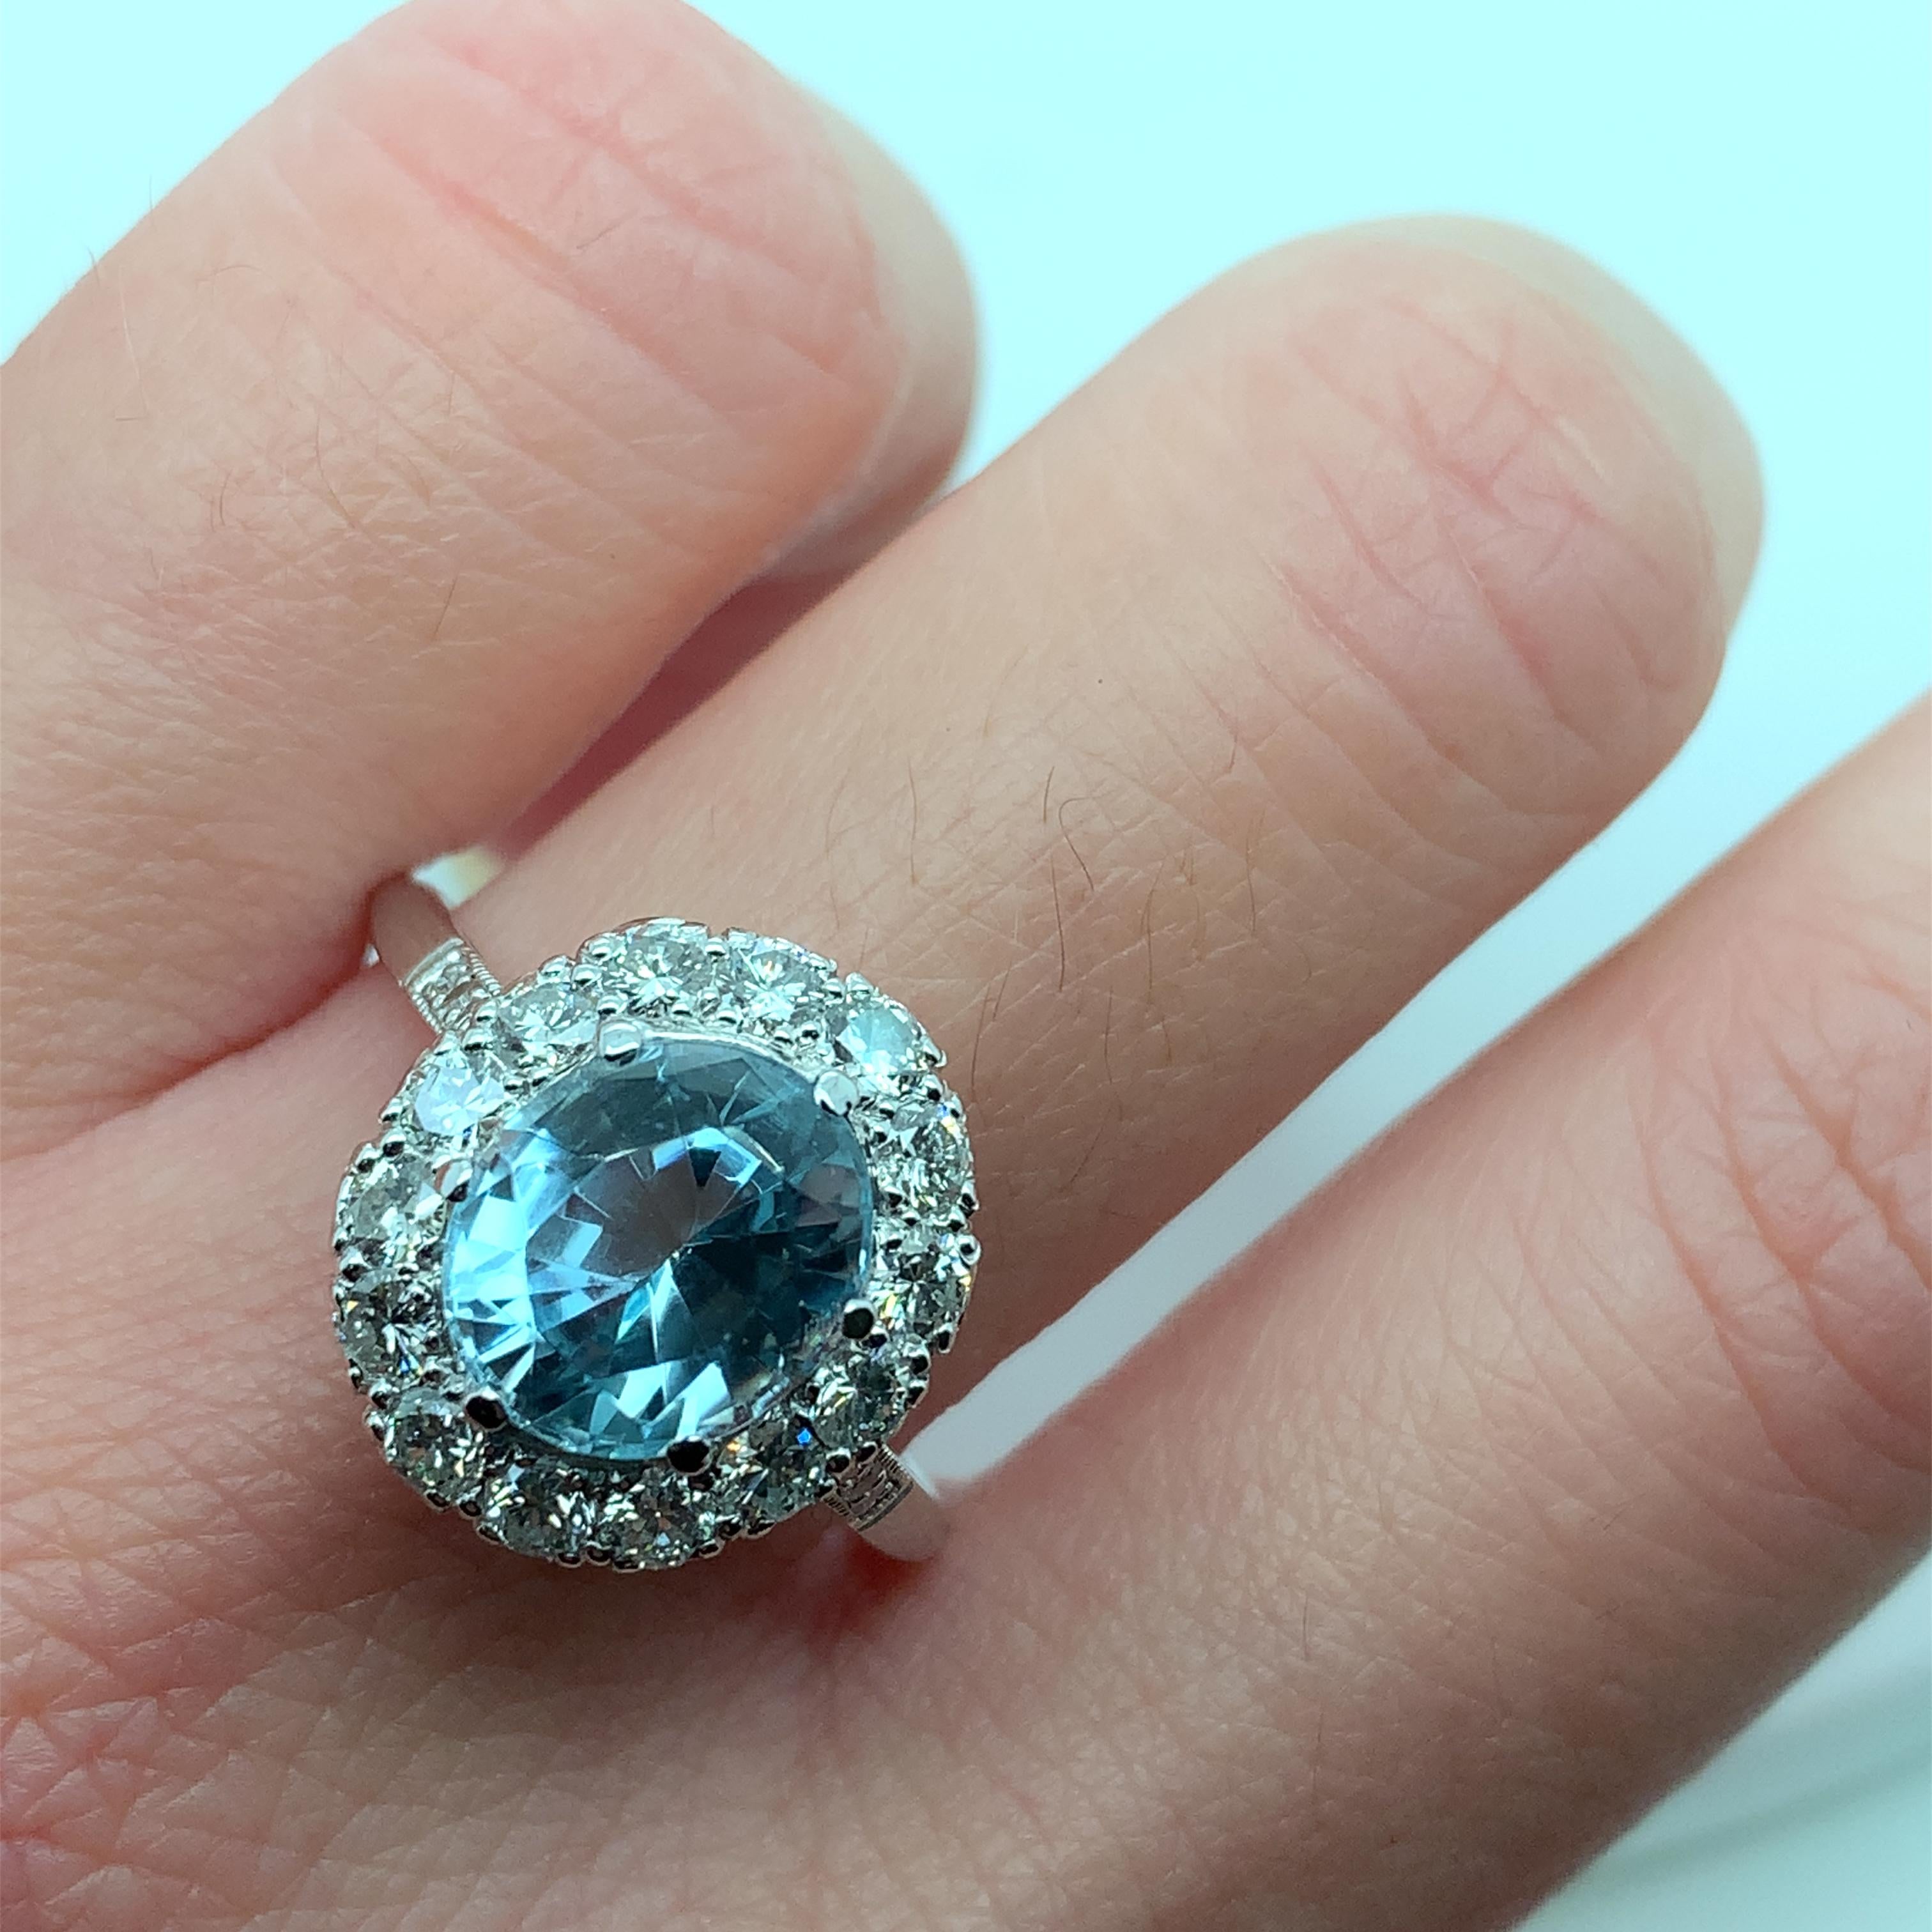 4,28ct Aquamarin und Diamant Art-Deco-Cocktail-Ring Platin
Aquamarin natürlicher Edelstein blaue Farbe oval geformt Gesamtgewicht 3,08ct natürlich unbehandelt
Diamanten runder Brillantschliff Gesamtgewicht 1,20ct F Farbe VS1 Reinheit
Ringgröße